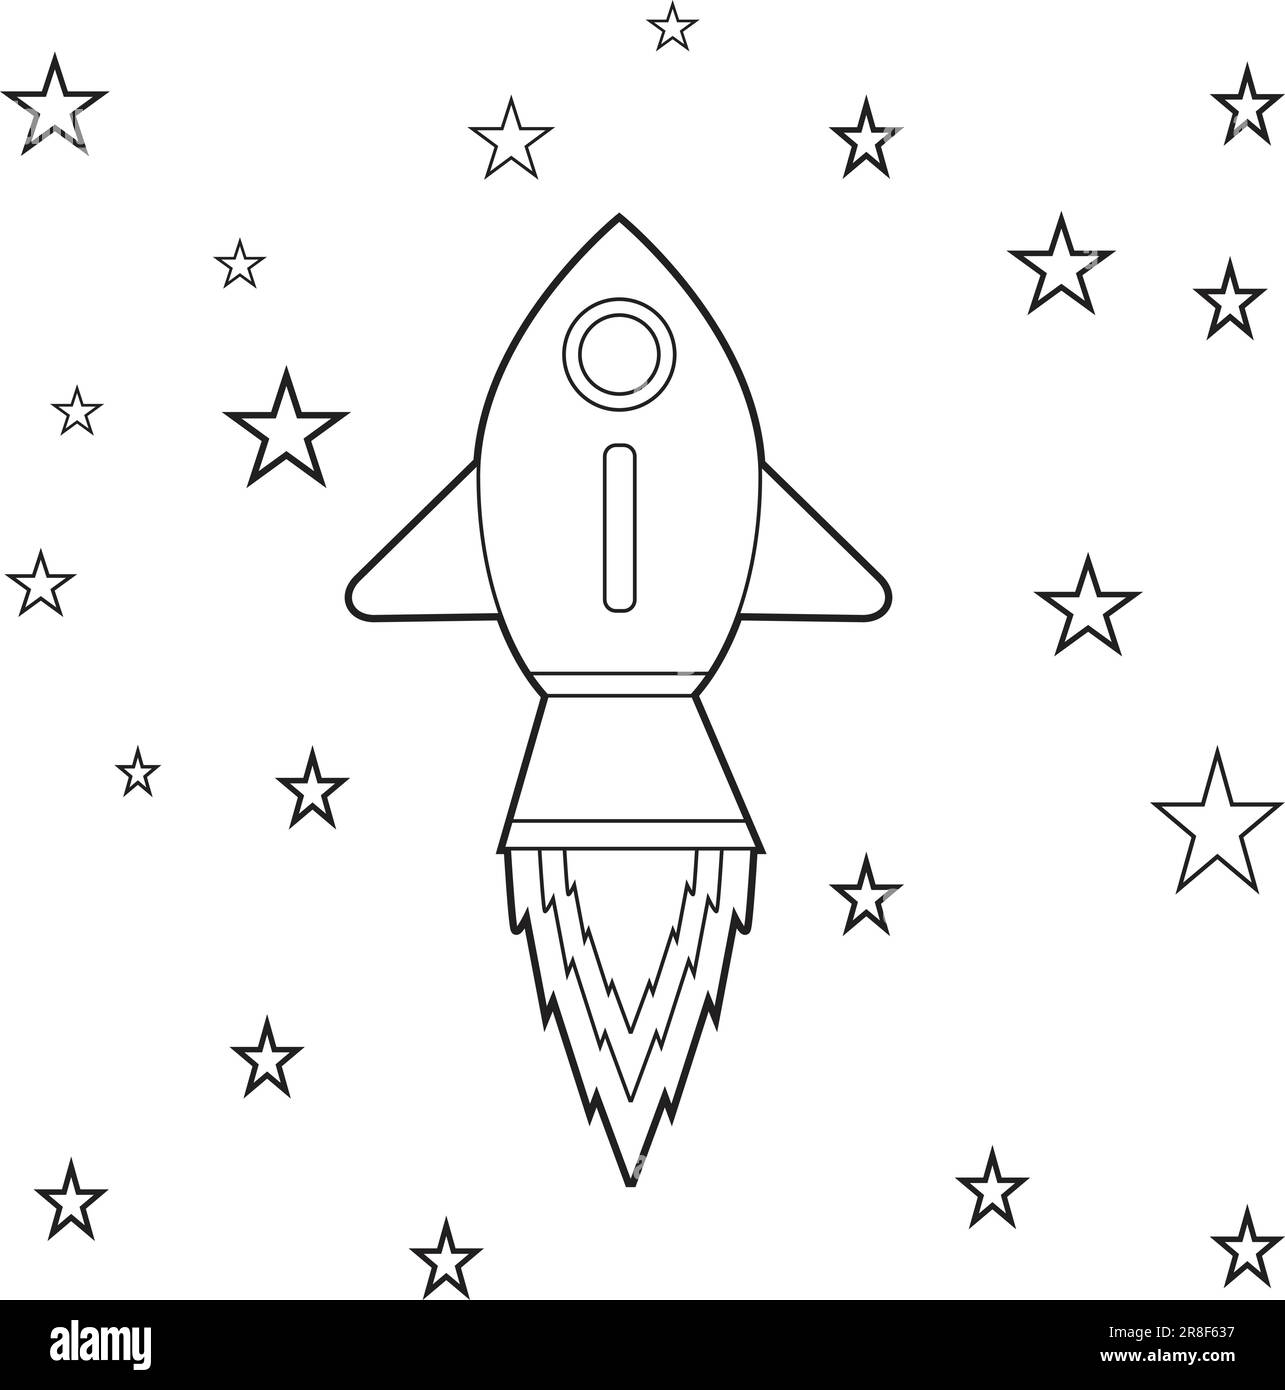 Pagina da colorare di un razzo di cartoni animati che vola nello spazio con le stelle. Illustrazione per la pagina da colorare per bambini Illustrazione Vettoriale